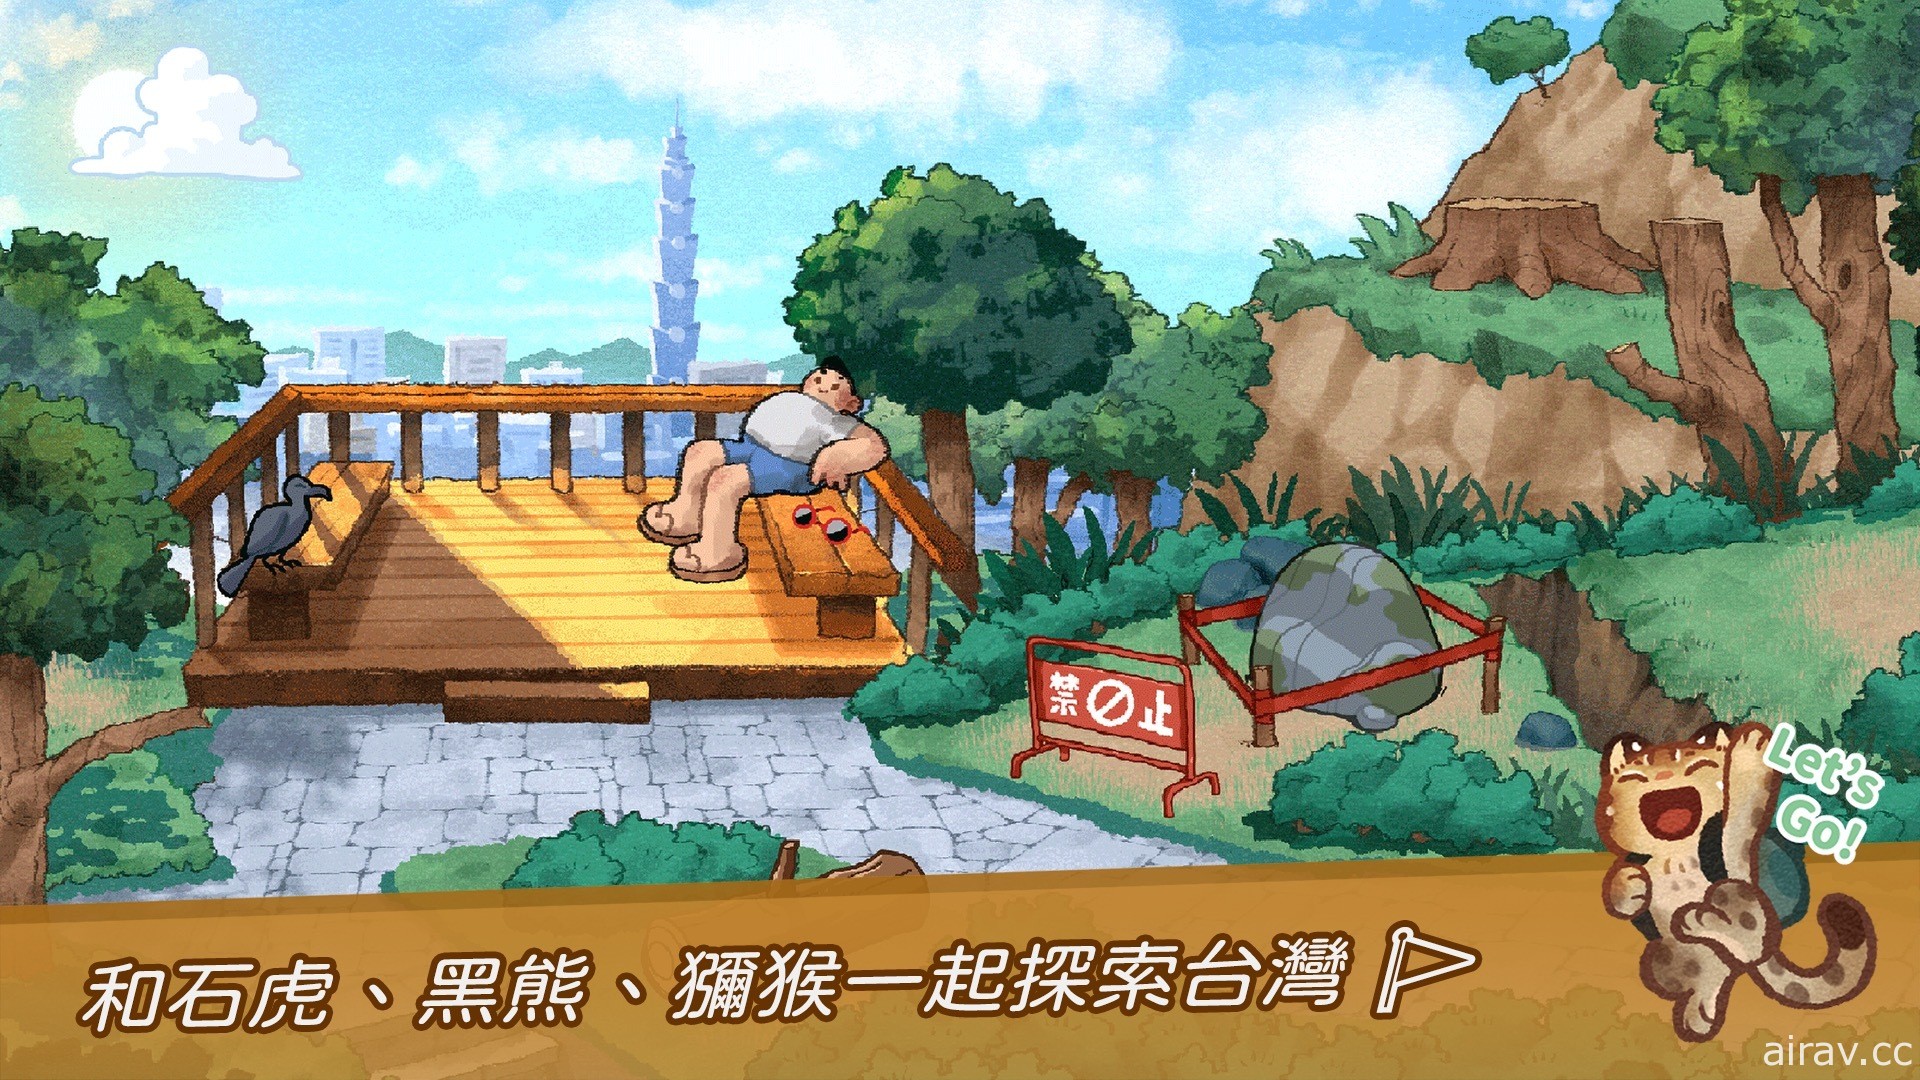 以台灣原生動物為主題《回家 - Homeward》宣布 2 月下旬在 Steam 平台上市